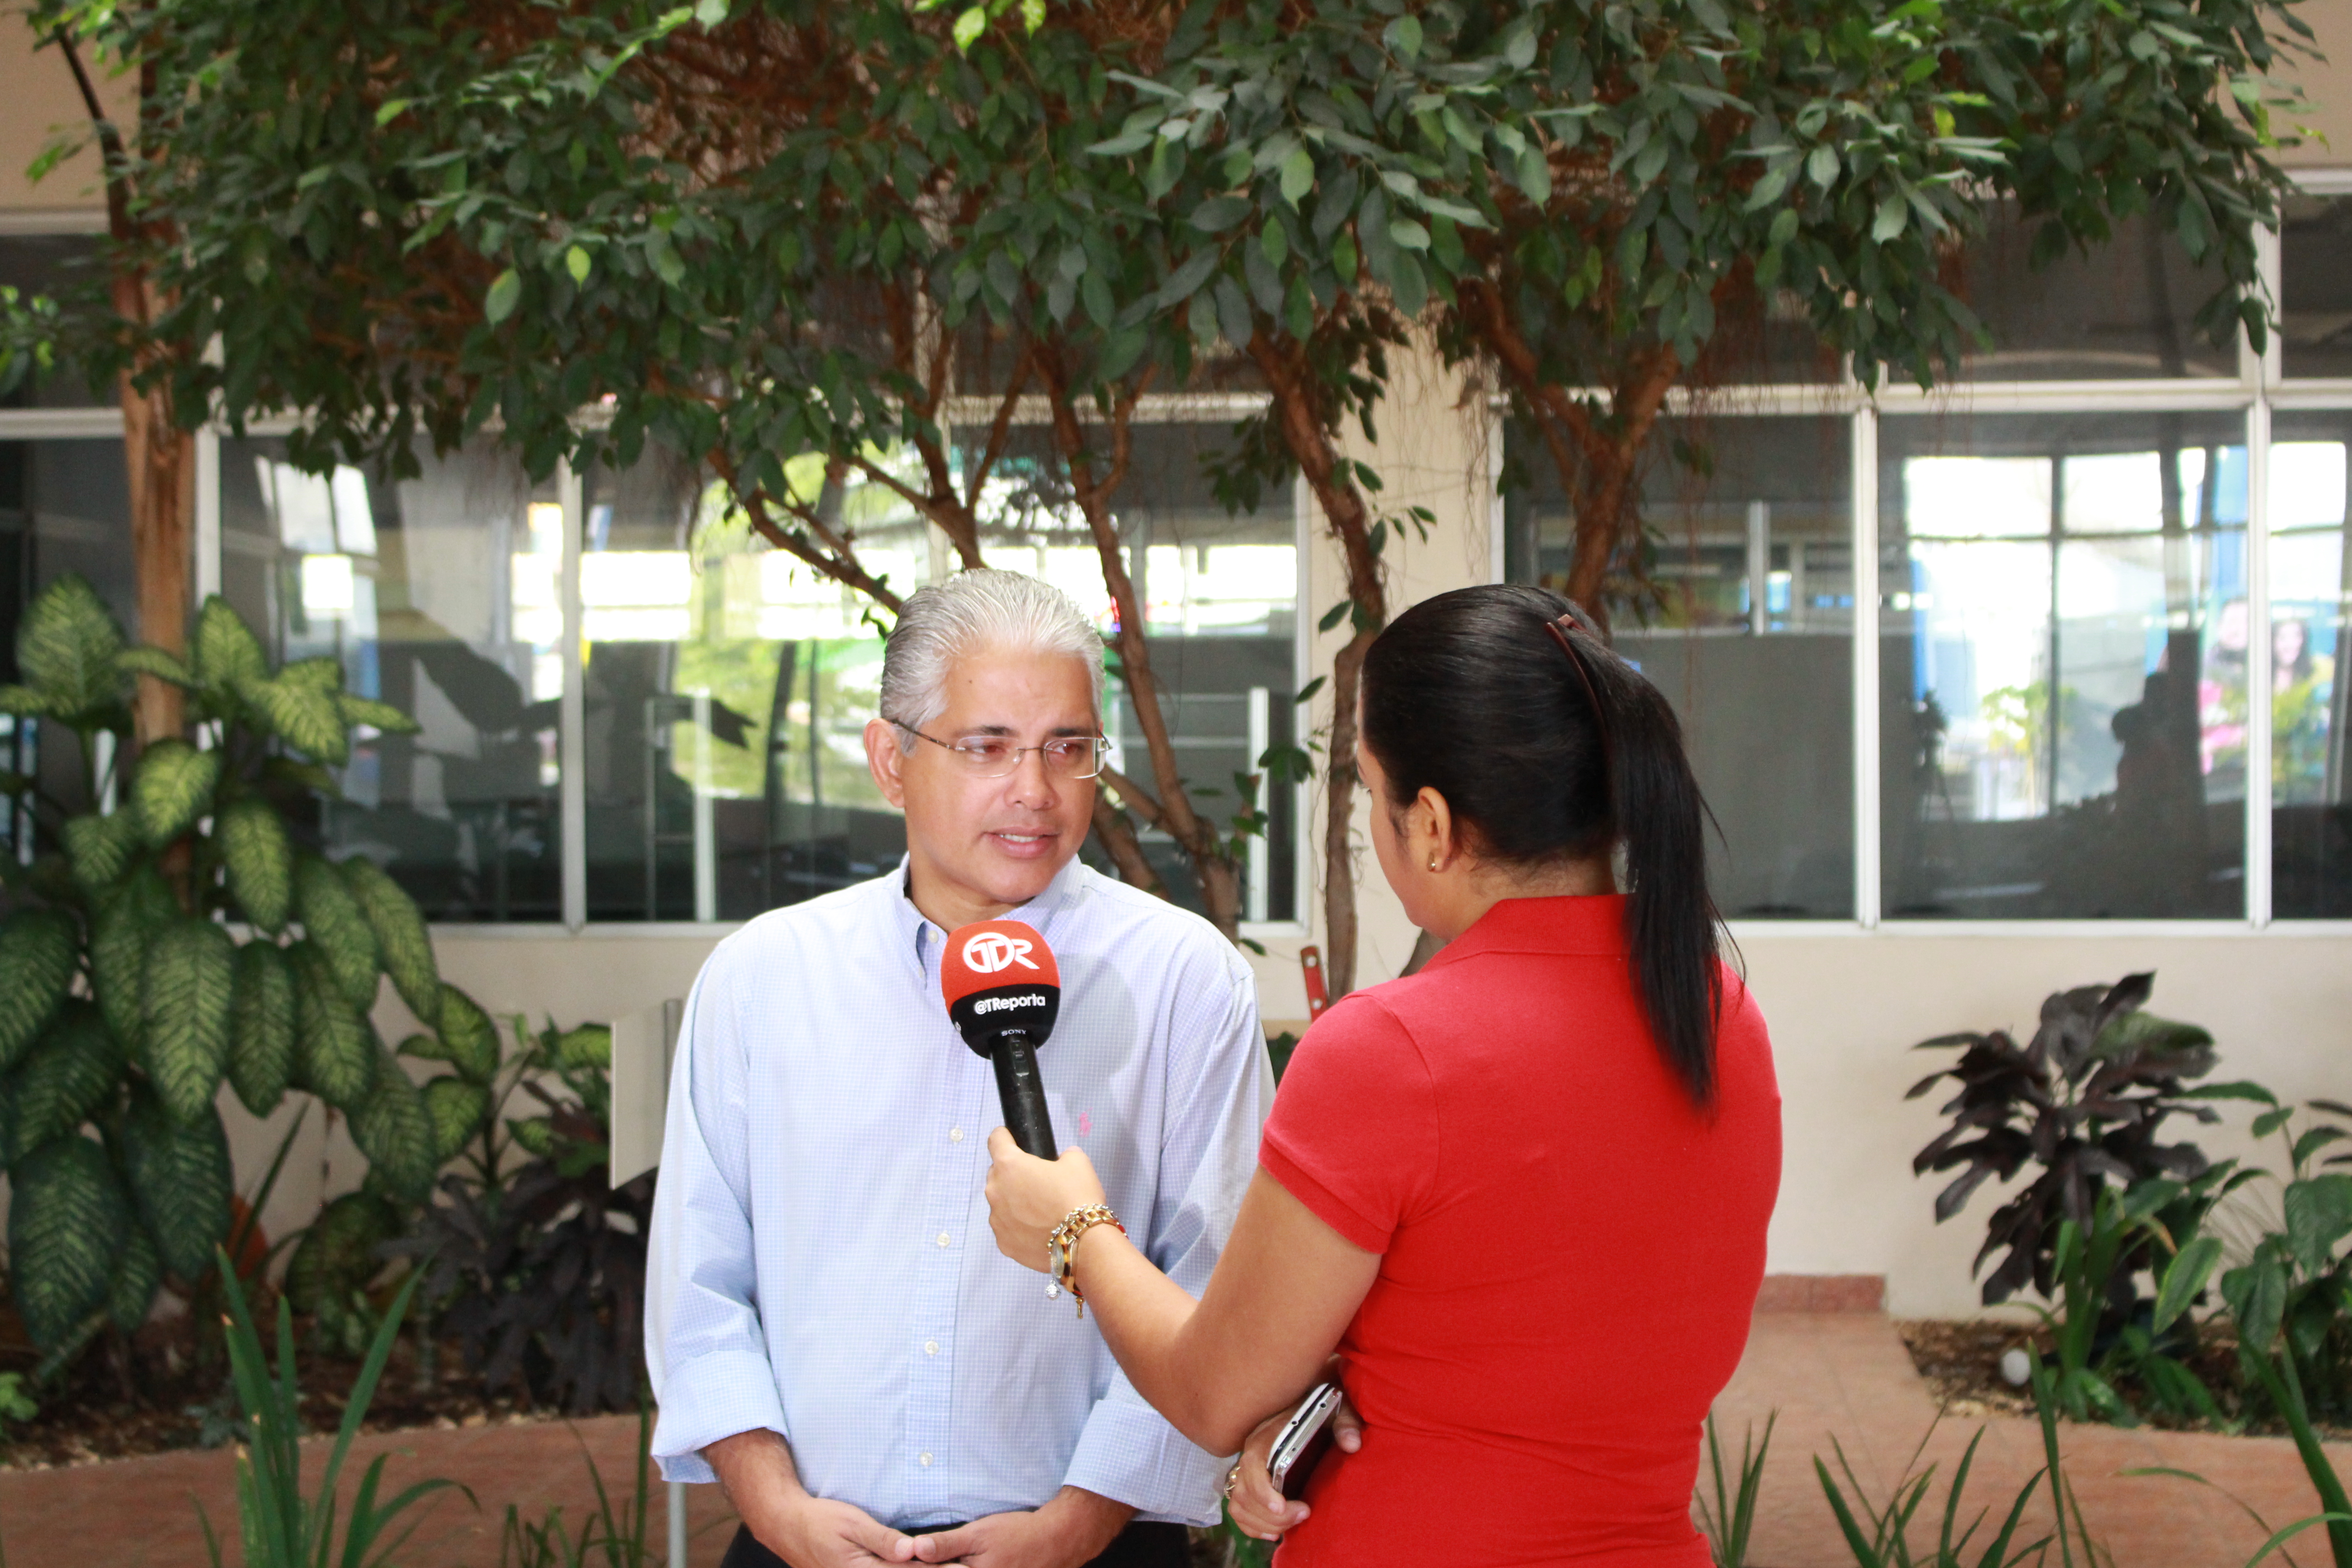 Panama City Mayor, José Isabel Blandón Figueroa, promotes “Tengo Un Idea” when talking with the press.